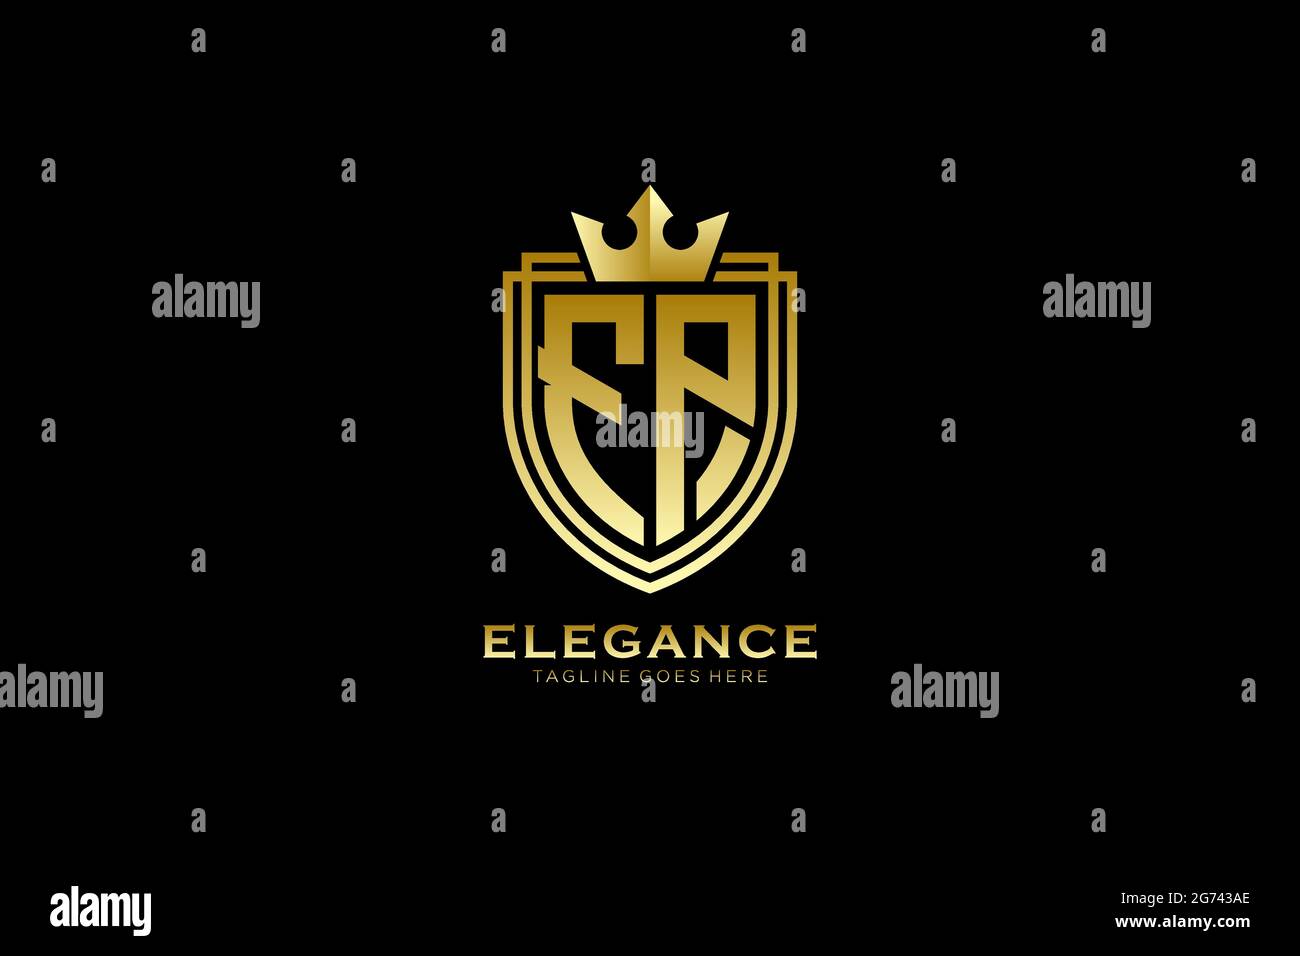 FP Elegantes Luxus-Monogramm-Logo oder Badge-Vorlage mit Rollen und königlicher Krone - perfekt für luxuriöse Branding-Projekte Stock Vektor